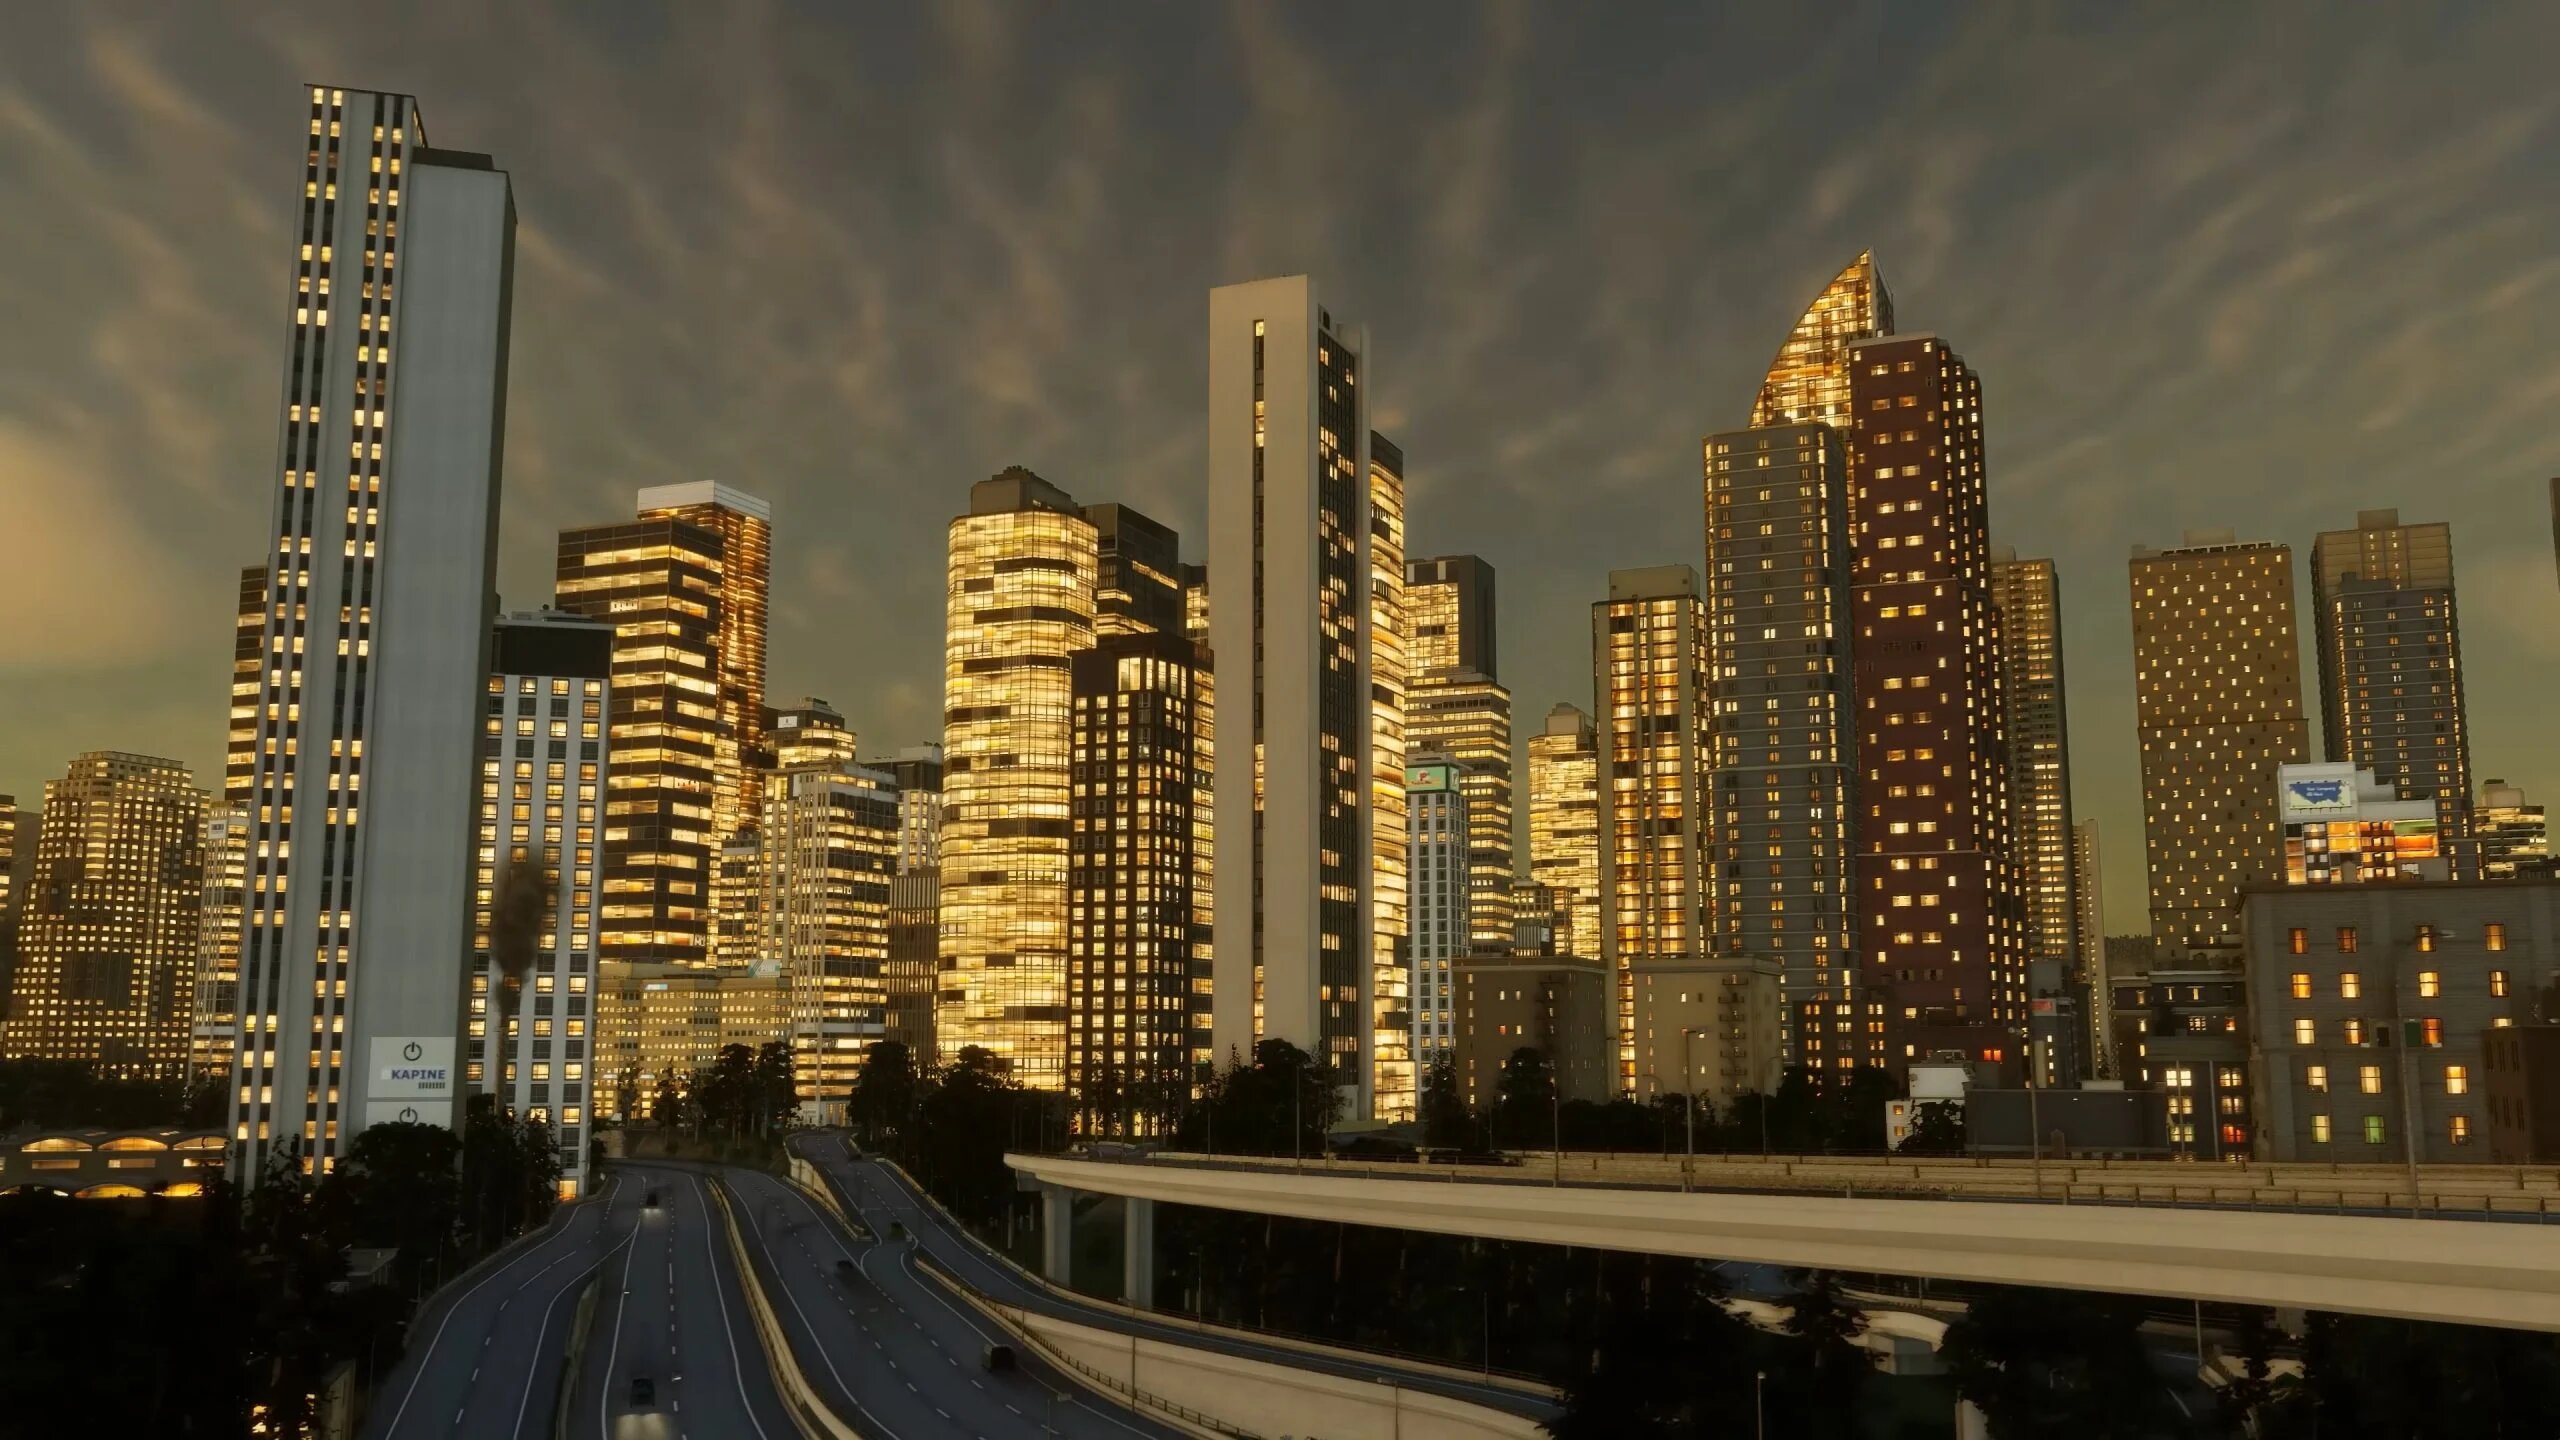 City of Dreams puede construirse en cualquier ordenador: Requisitos del  sistema para Cities Skylines II